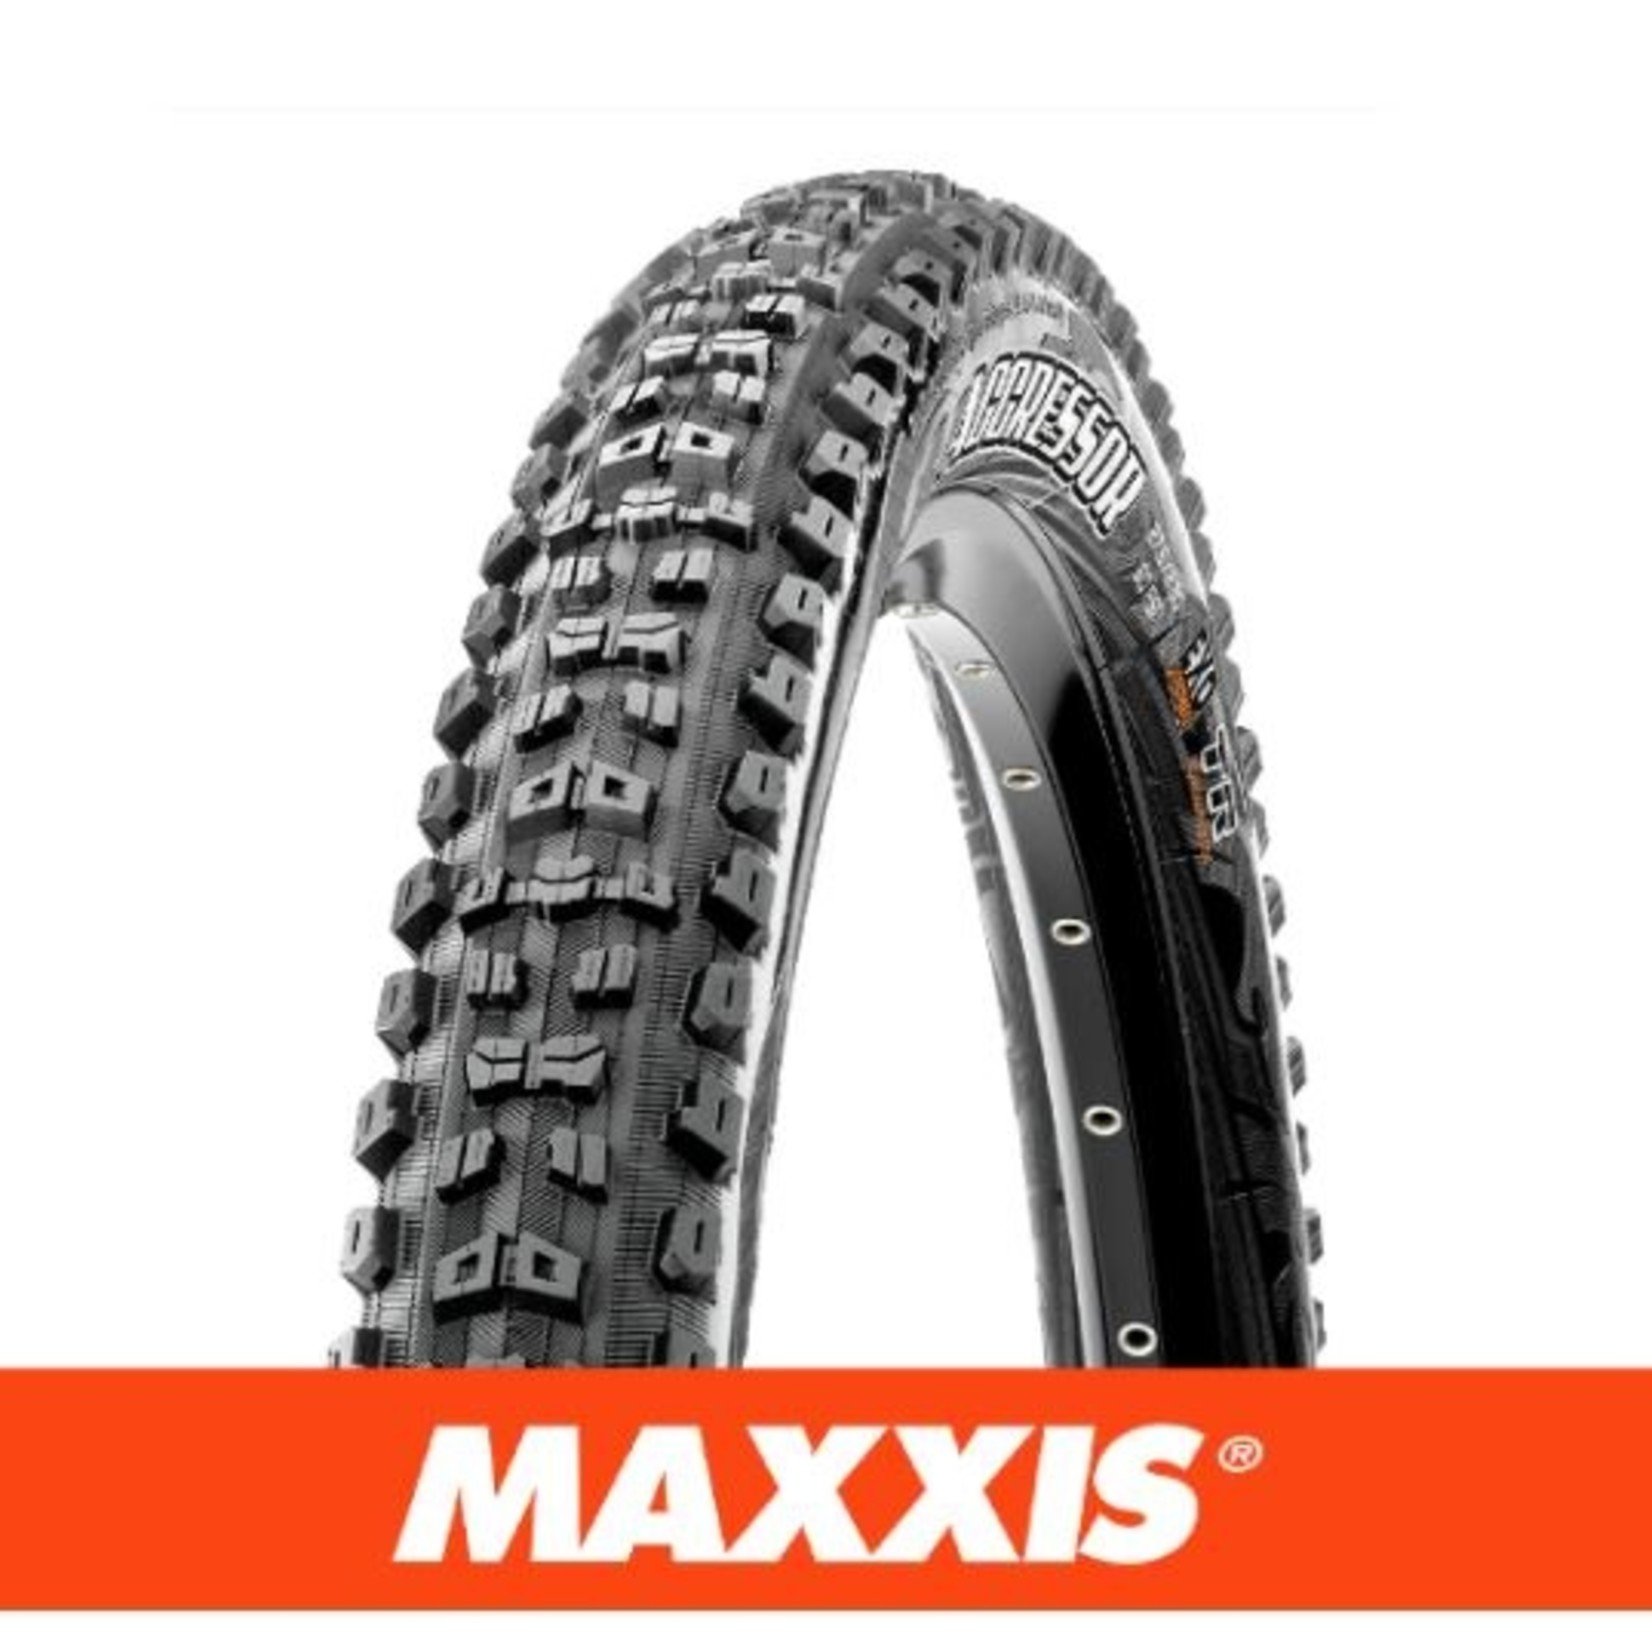 Maxxis Maxxis Aggressor Bike Tyre - 27.5 X 2.50 - Folding TR DD 120X2 TPI Black - Pair